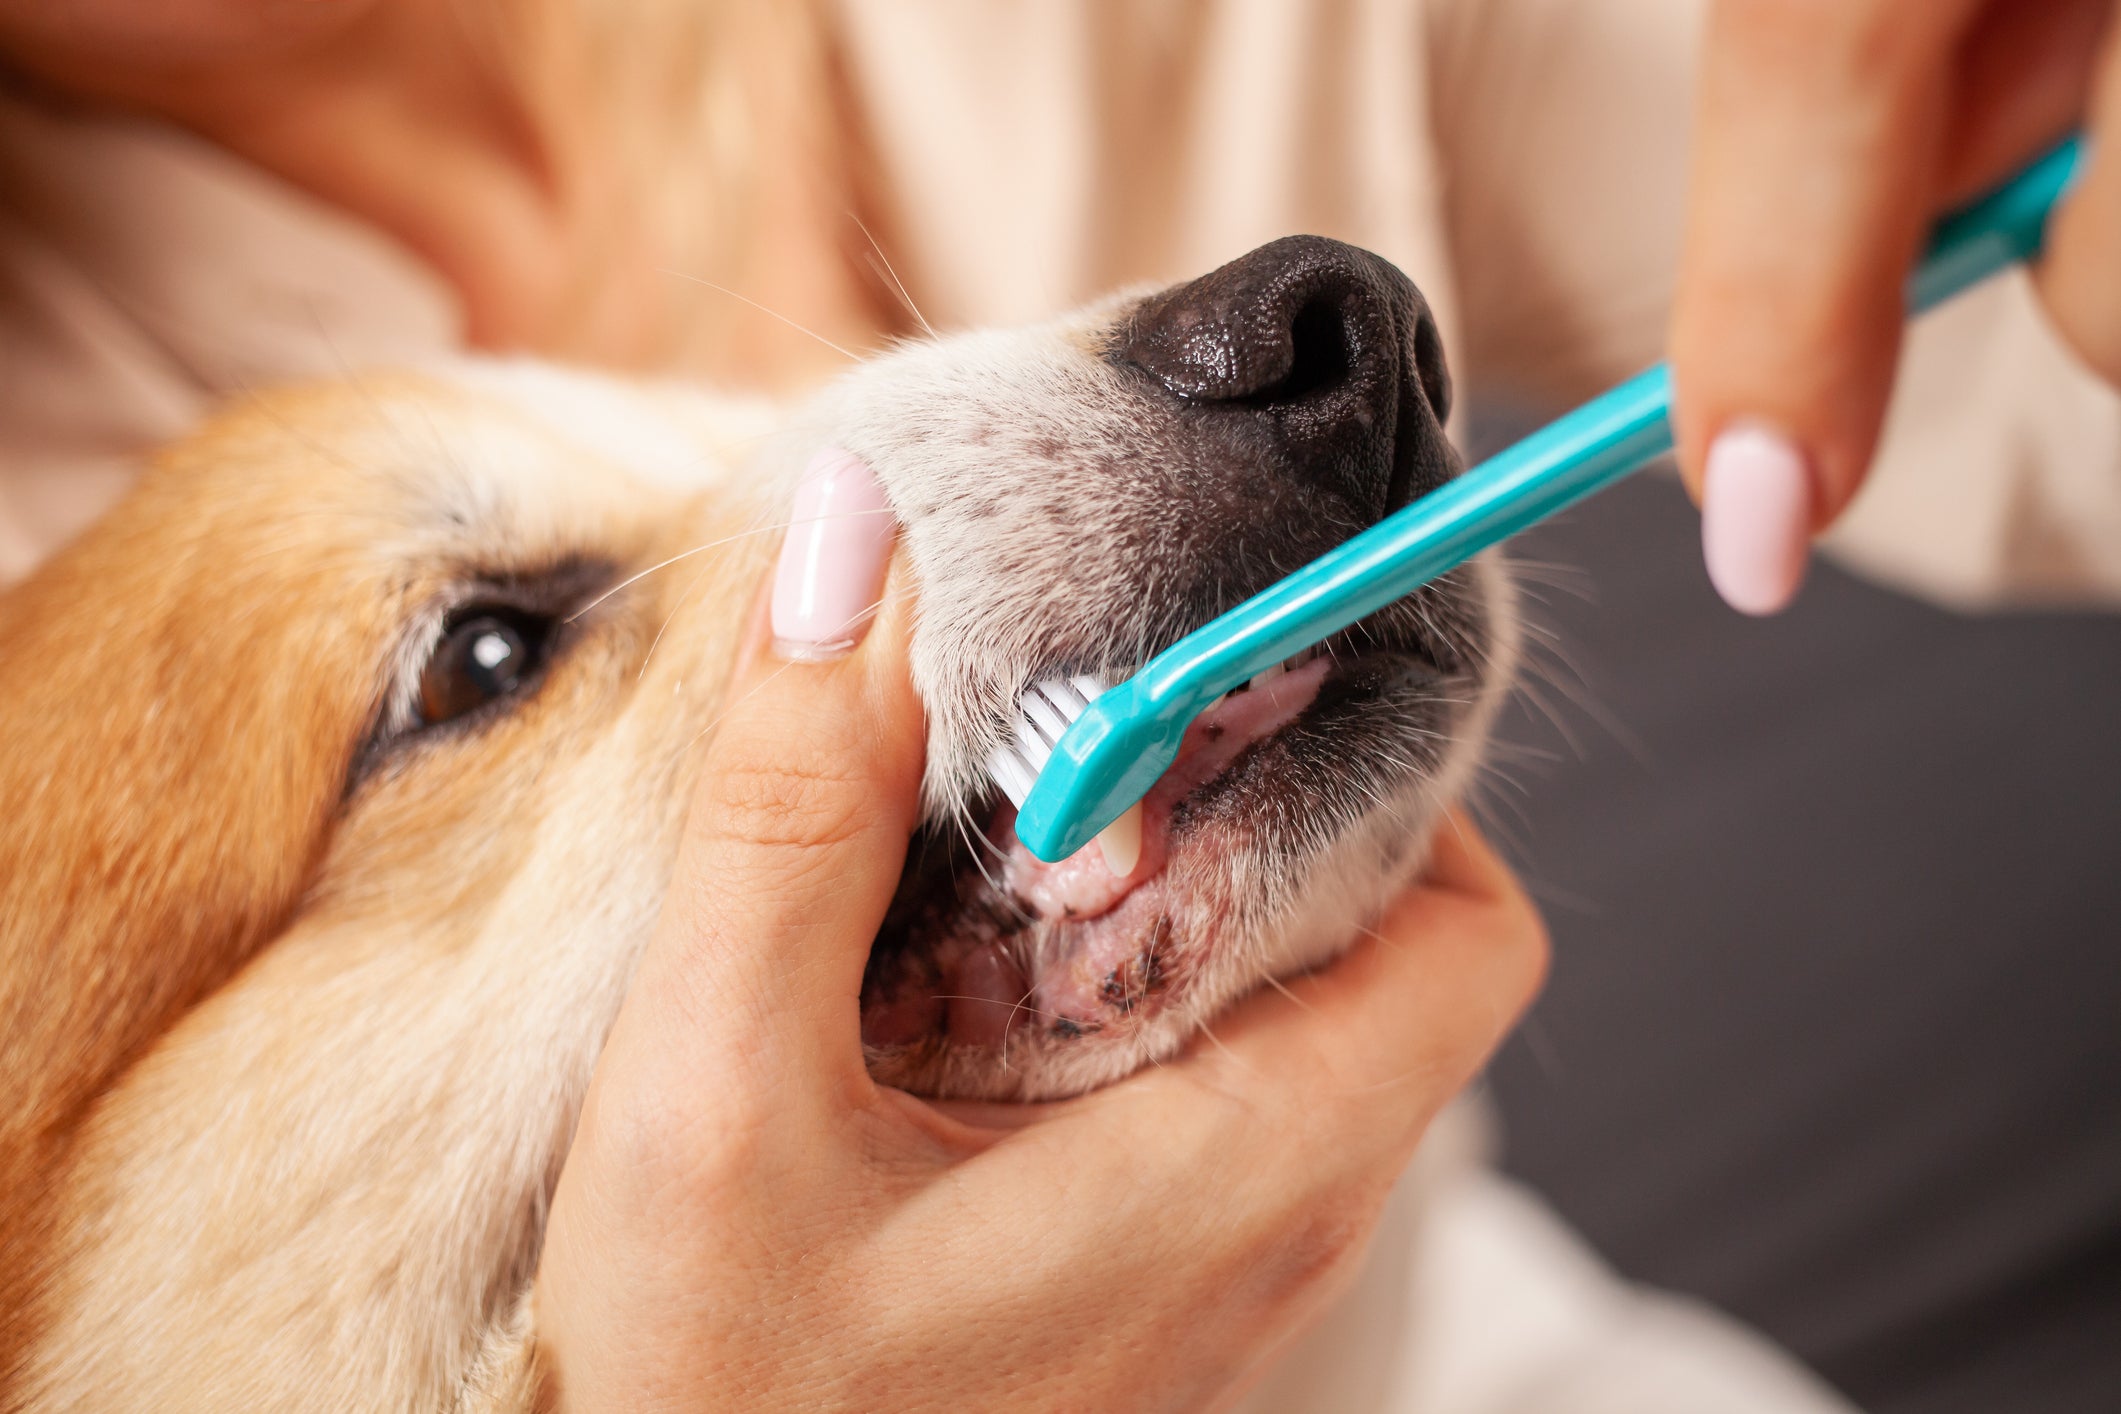 Tutora escovando os dentes de cachorro com escova azul